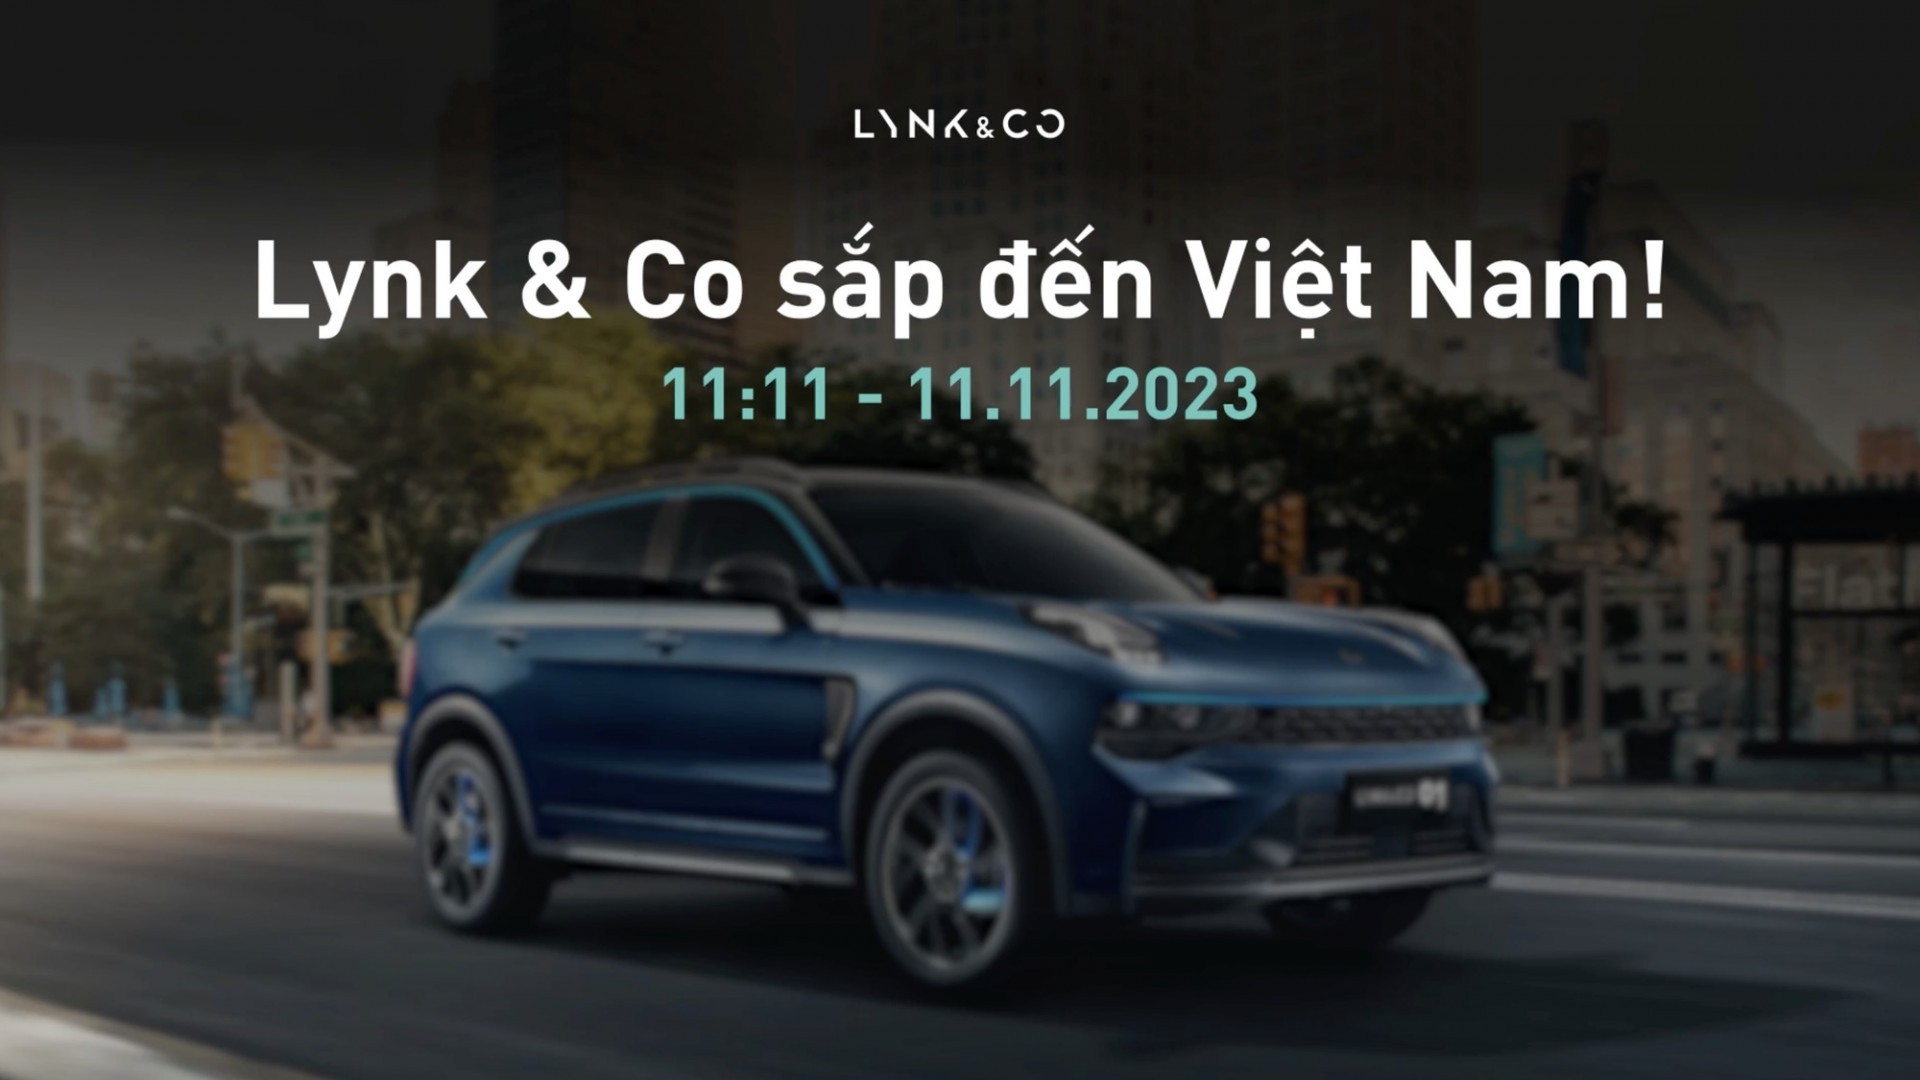 Hãng xe Trung Quốc Lynk & Co chốt lịch ra mắt Việt Nam vào ngày 11/11